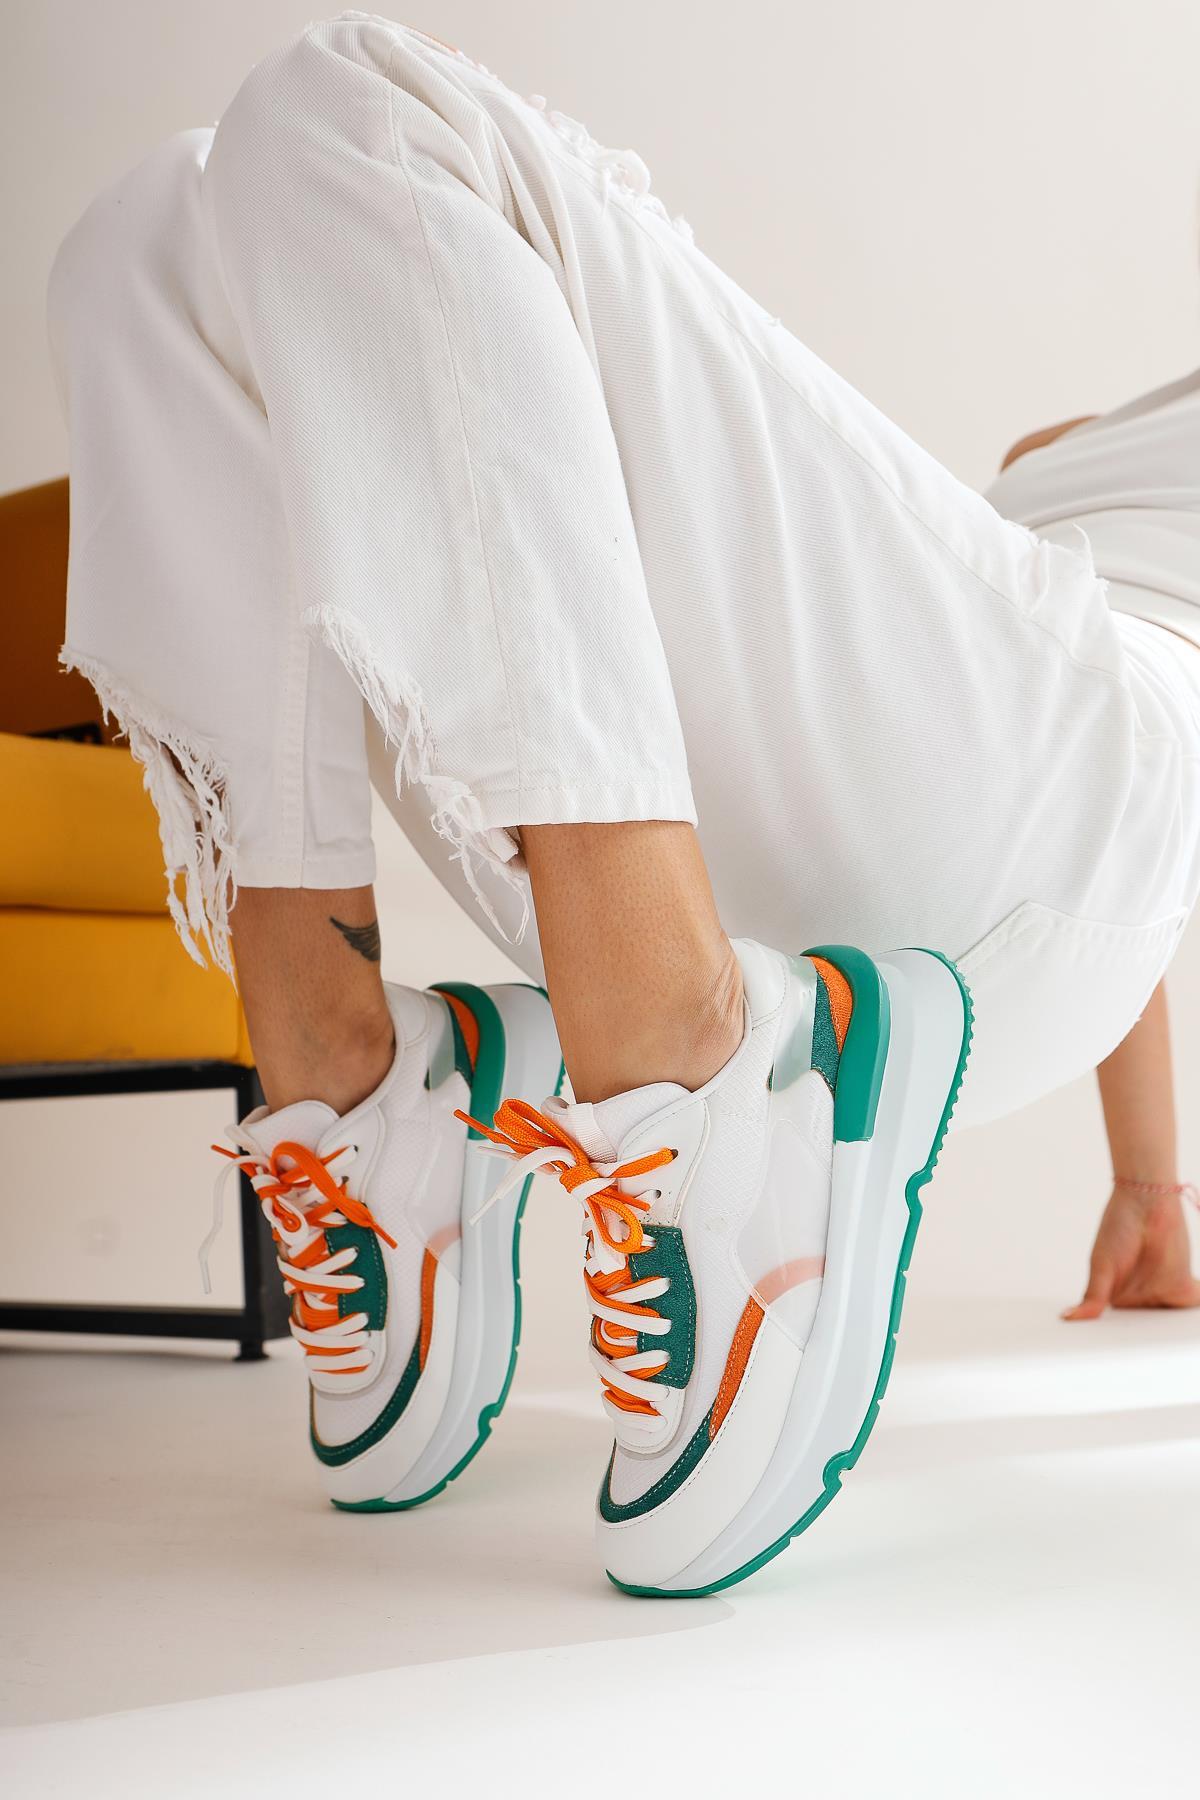 Luam Beyaz Yeşil Kadın Sneakers Spor Kadın Ayakkabı